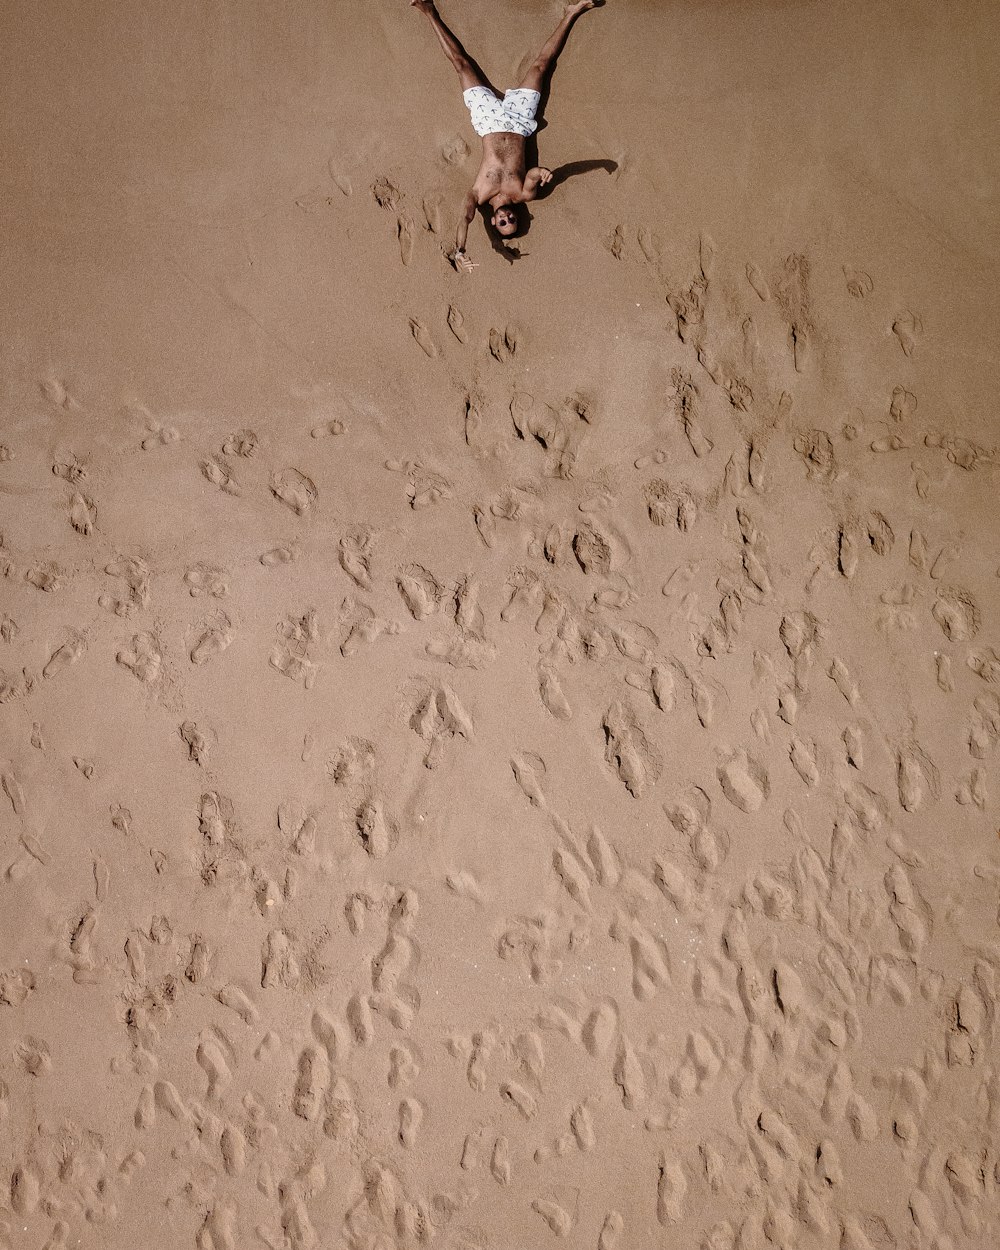 eine Person, die in der Mitte eines Sandstrandes steht